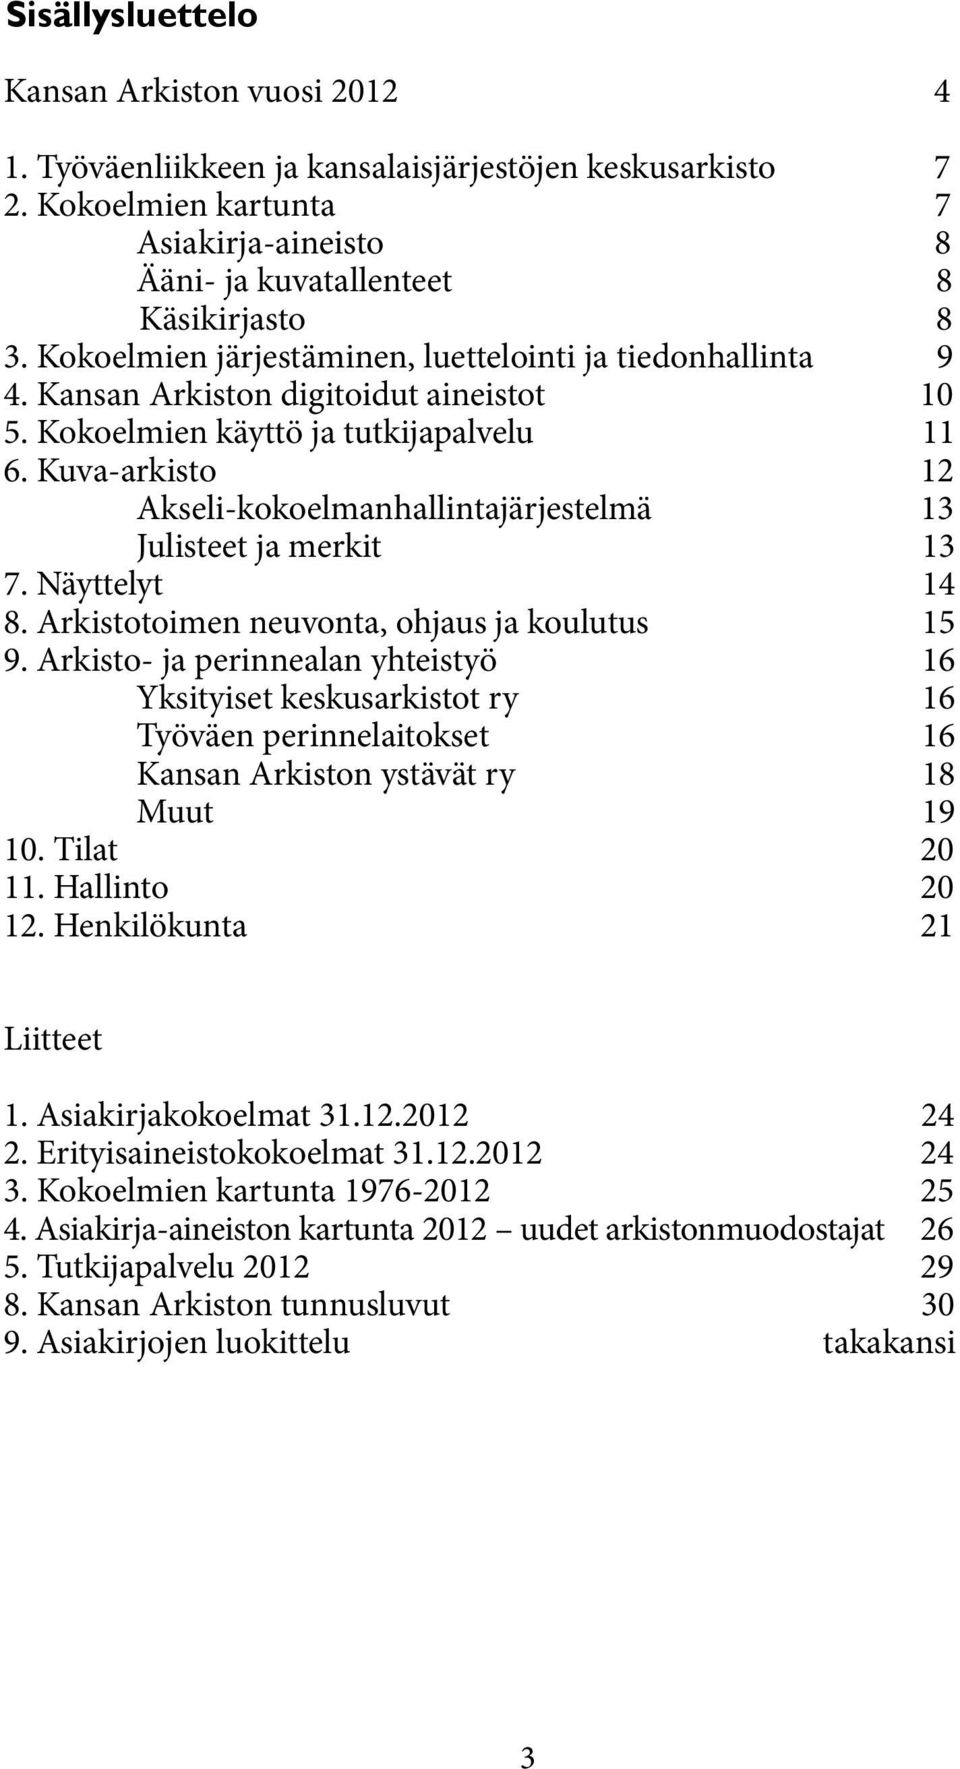 Kuva-arkisto 12 Akseli-kokoelmanhallintajärjestelmä 13 Julisteet ja merkit 13 7. Näyttelyt 14 8. Arkistotoimen neuvonta, ohjaus ja koulutus 15 9.